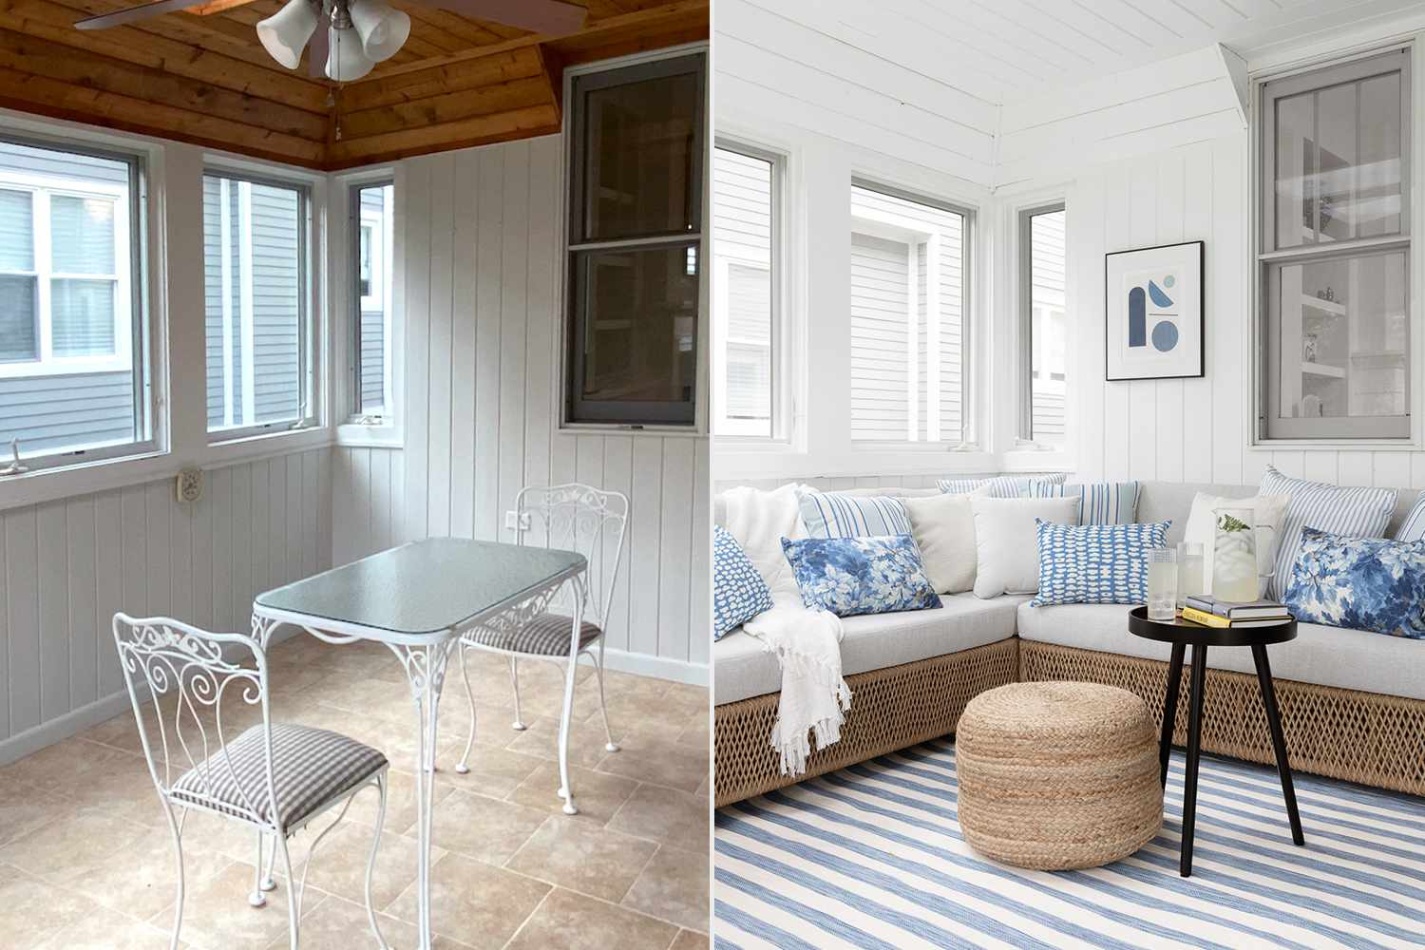 Transform Your Home With Divine Interior Design Ideas!